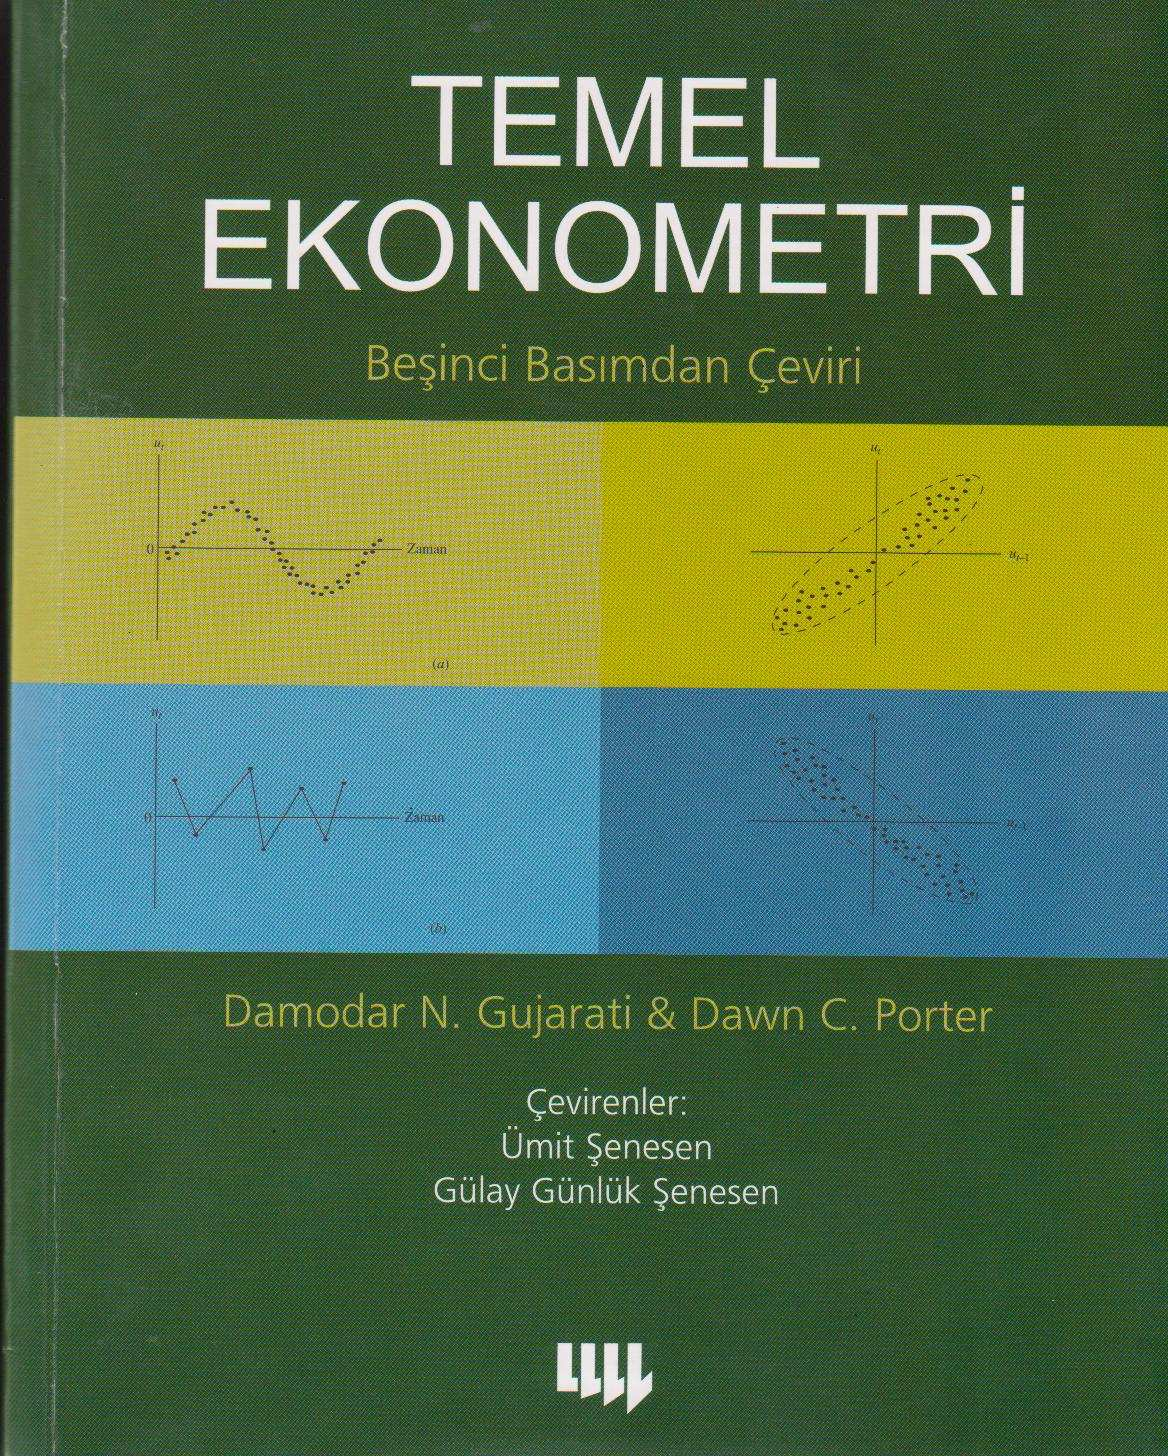 Ü.Şenesen ve G.G.Şenesen (2012) Temel Ekonometri, Literatür Yayınları, kitabının 1-314 sayfalarını okuyunuz. http://www.econometrics.com/comdata/gujarati/data.htm Damodar N.